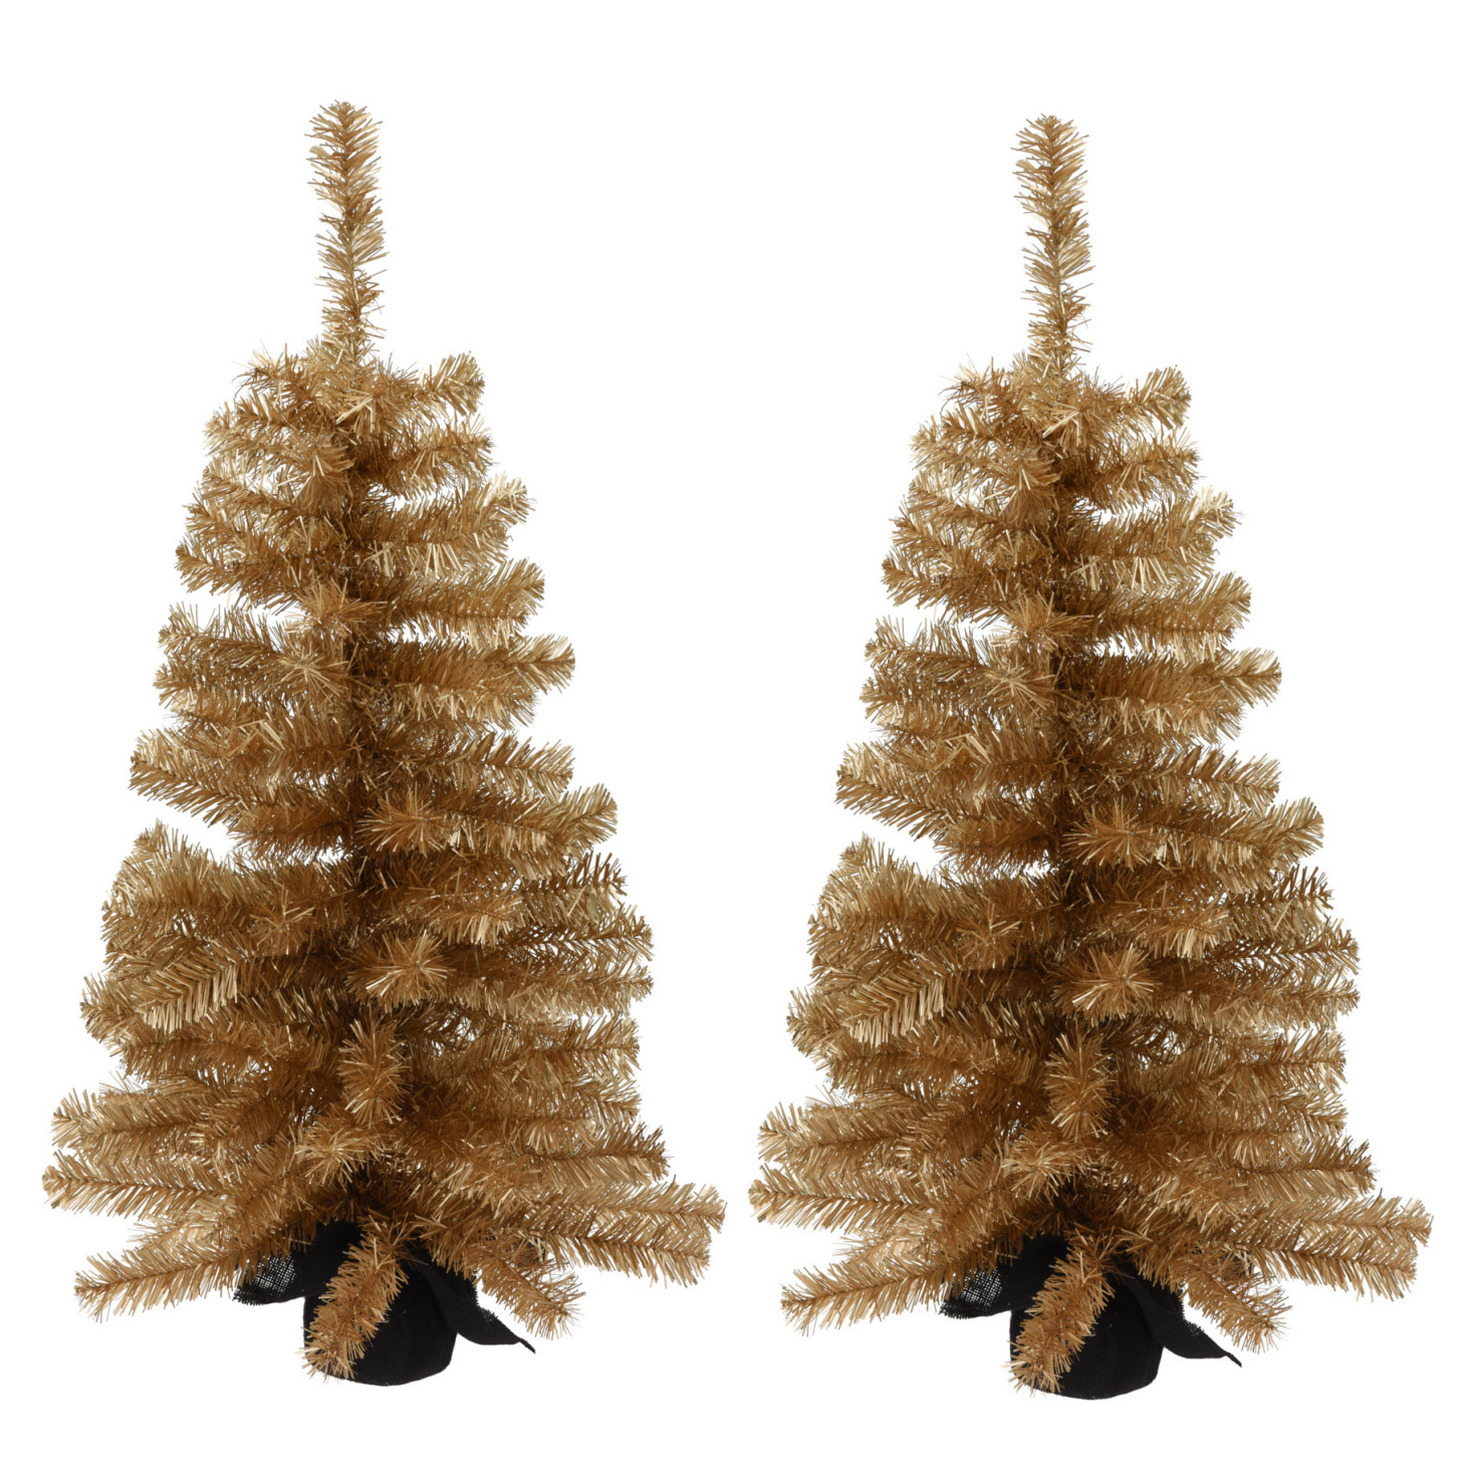 2x stuks kunstbomen-kunst kerstbomen goud 90 cm